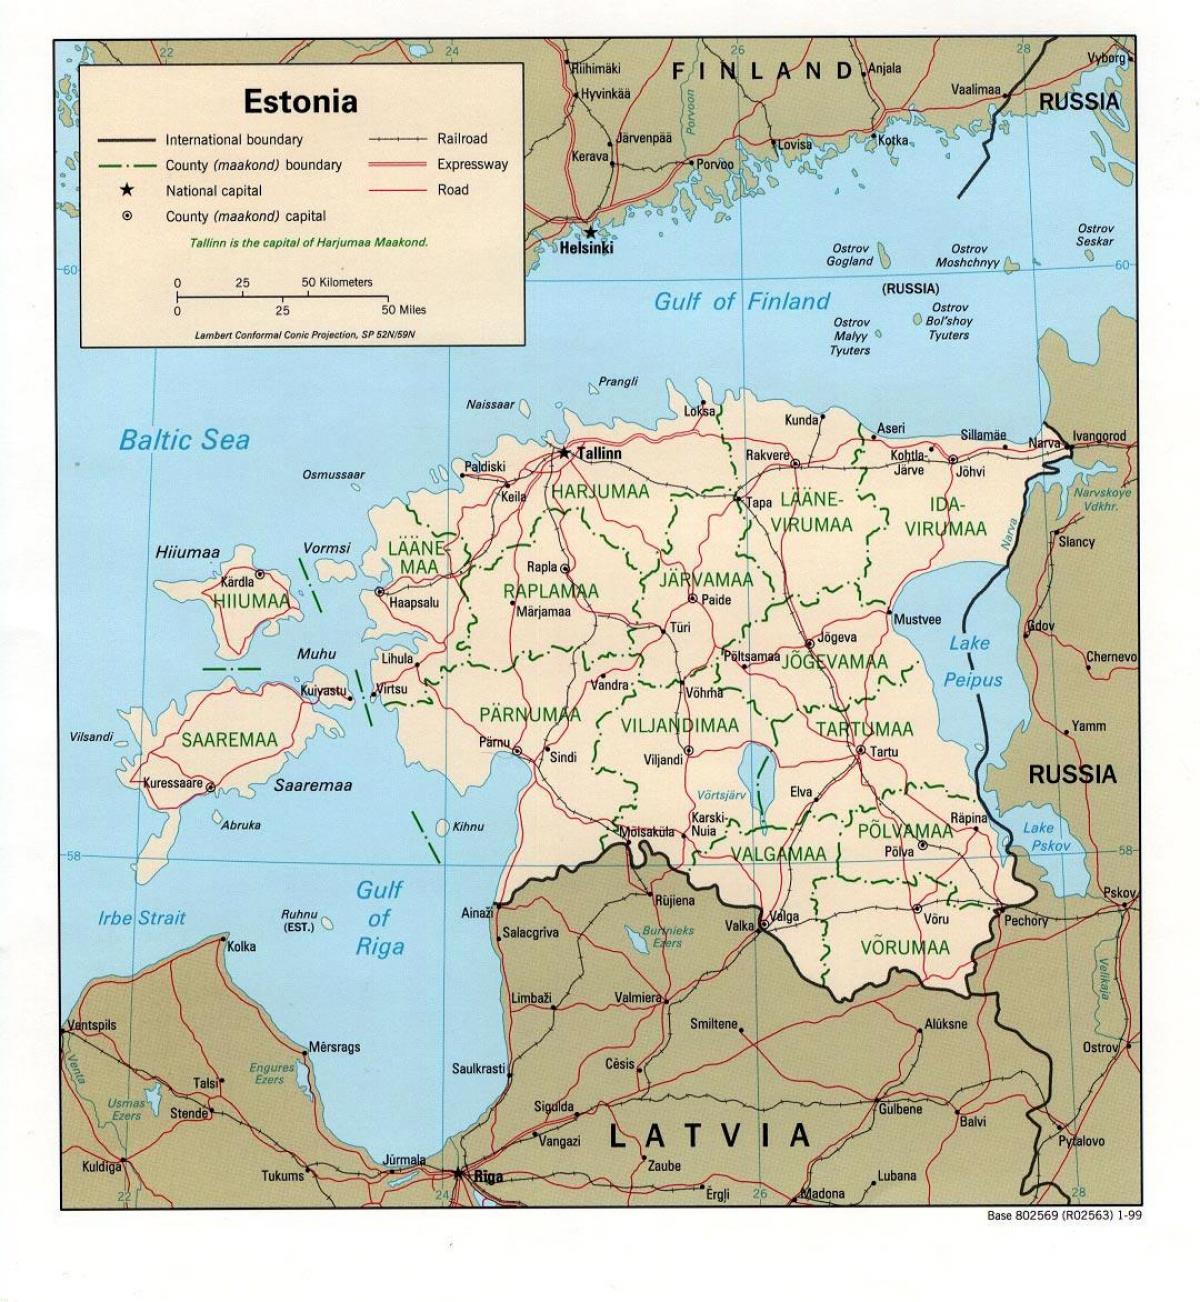 नक्शा एस्टोनिया के मानचित्र पर स्थान